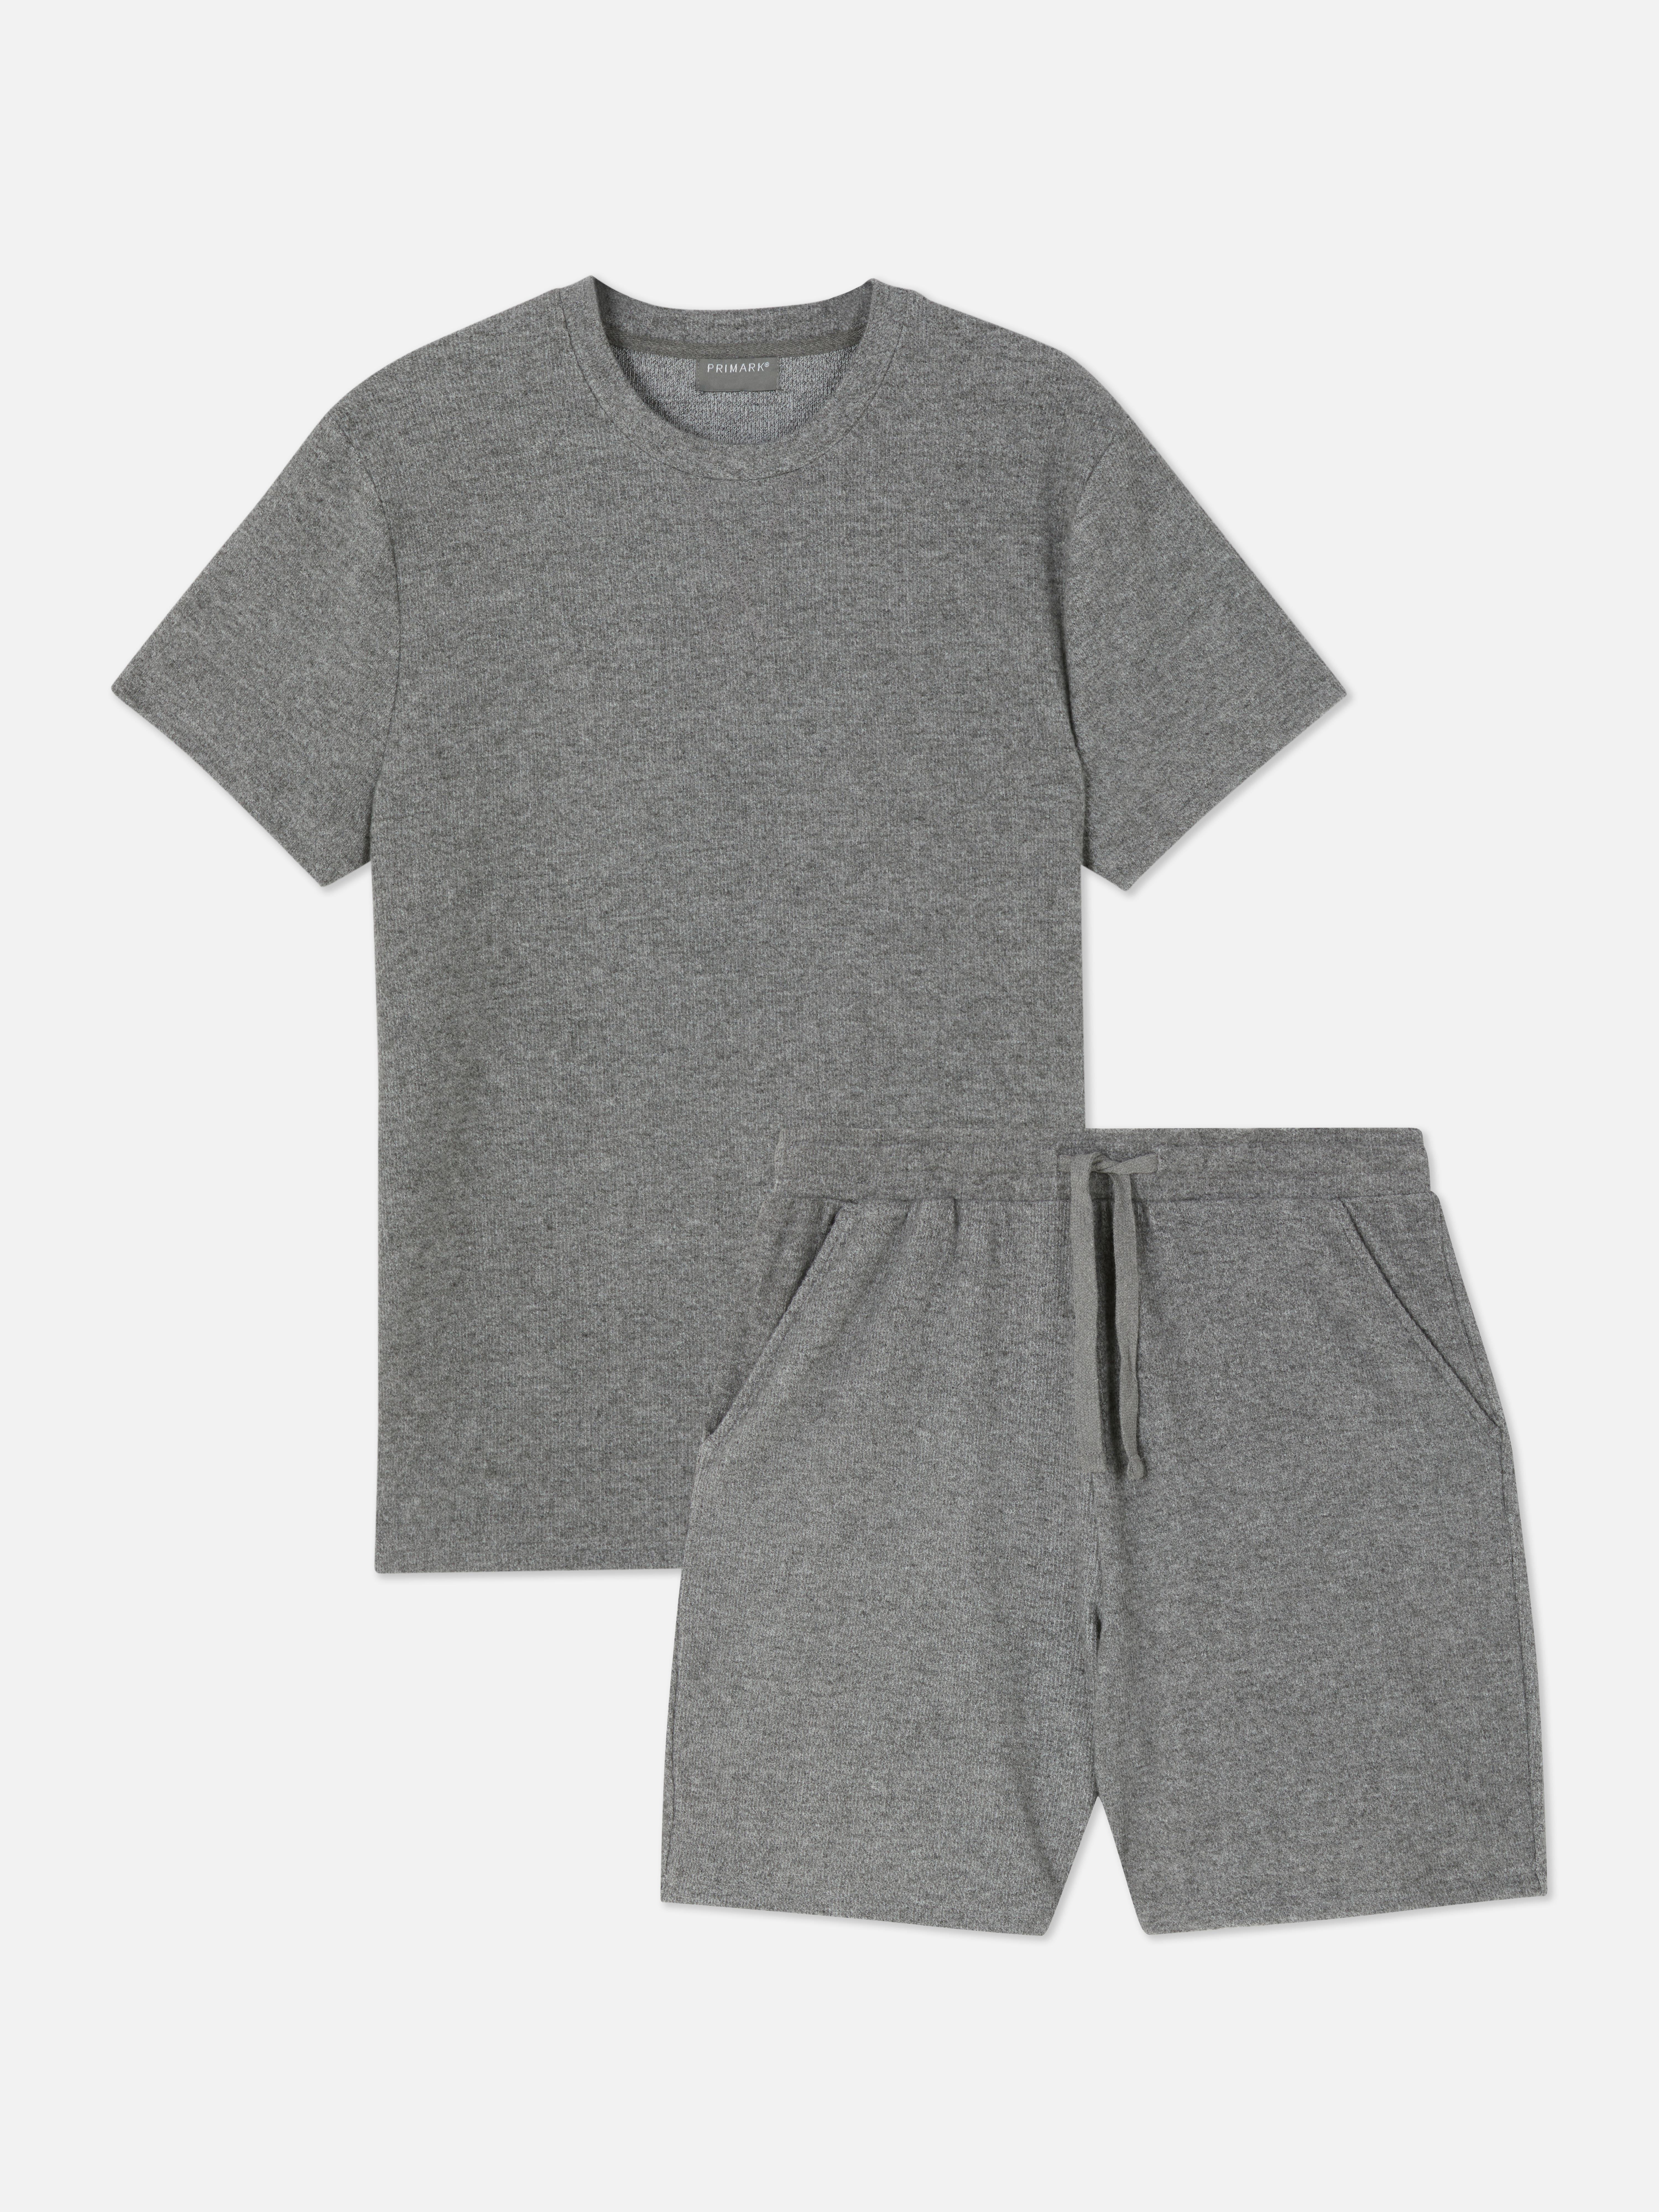 Ribbed T-shirt and Shorts Pyjama Set